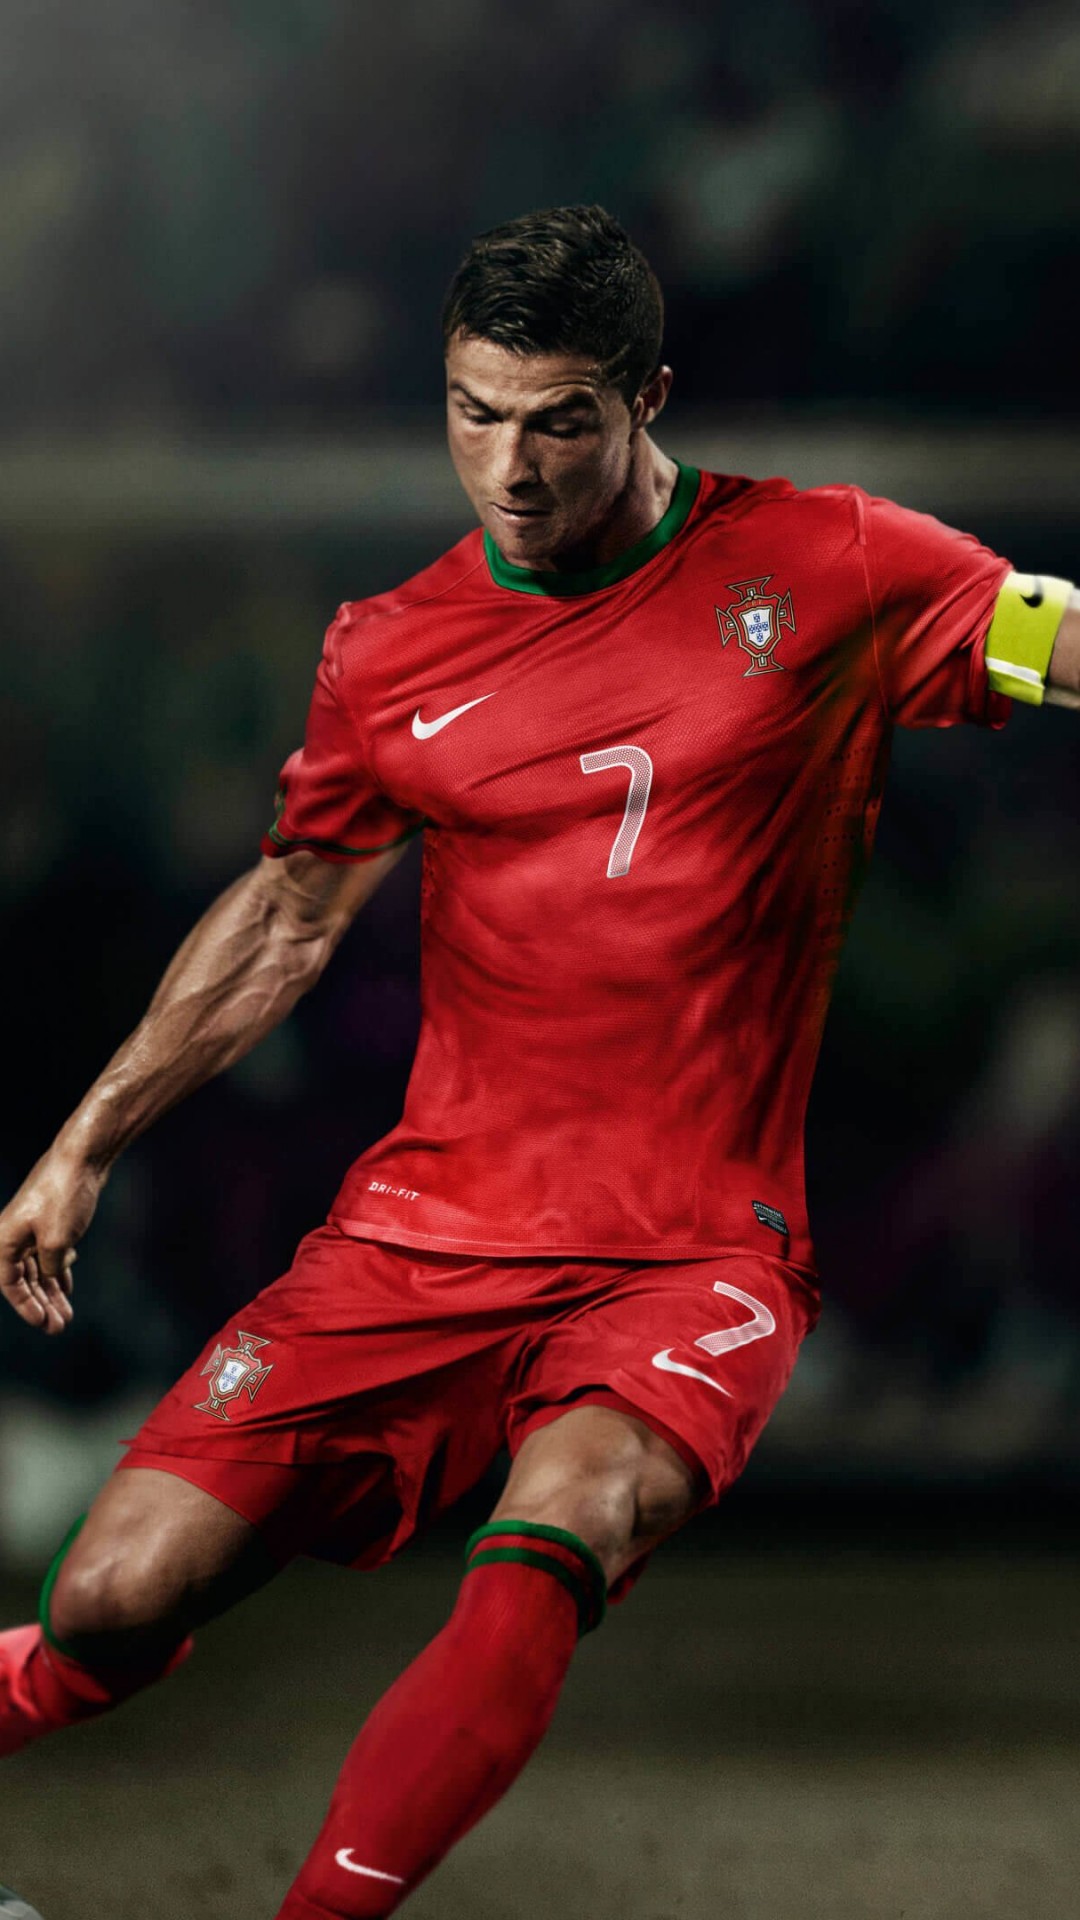 Cristiano Ronaldo In Portugal Jersey Wallpaper for Google Nexus 5